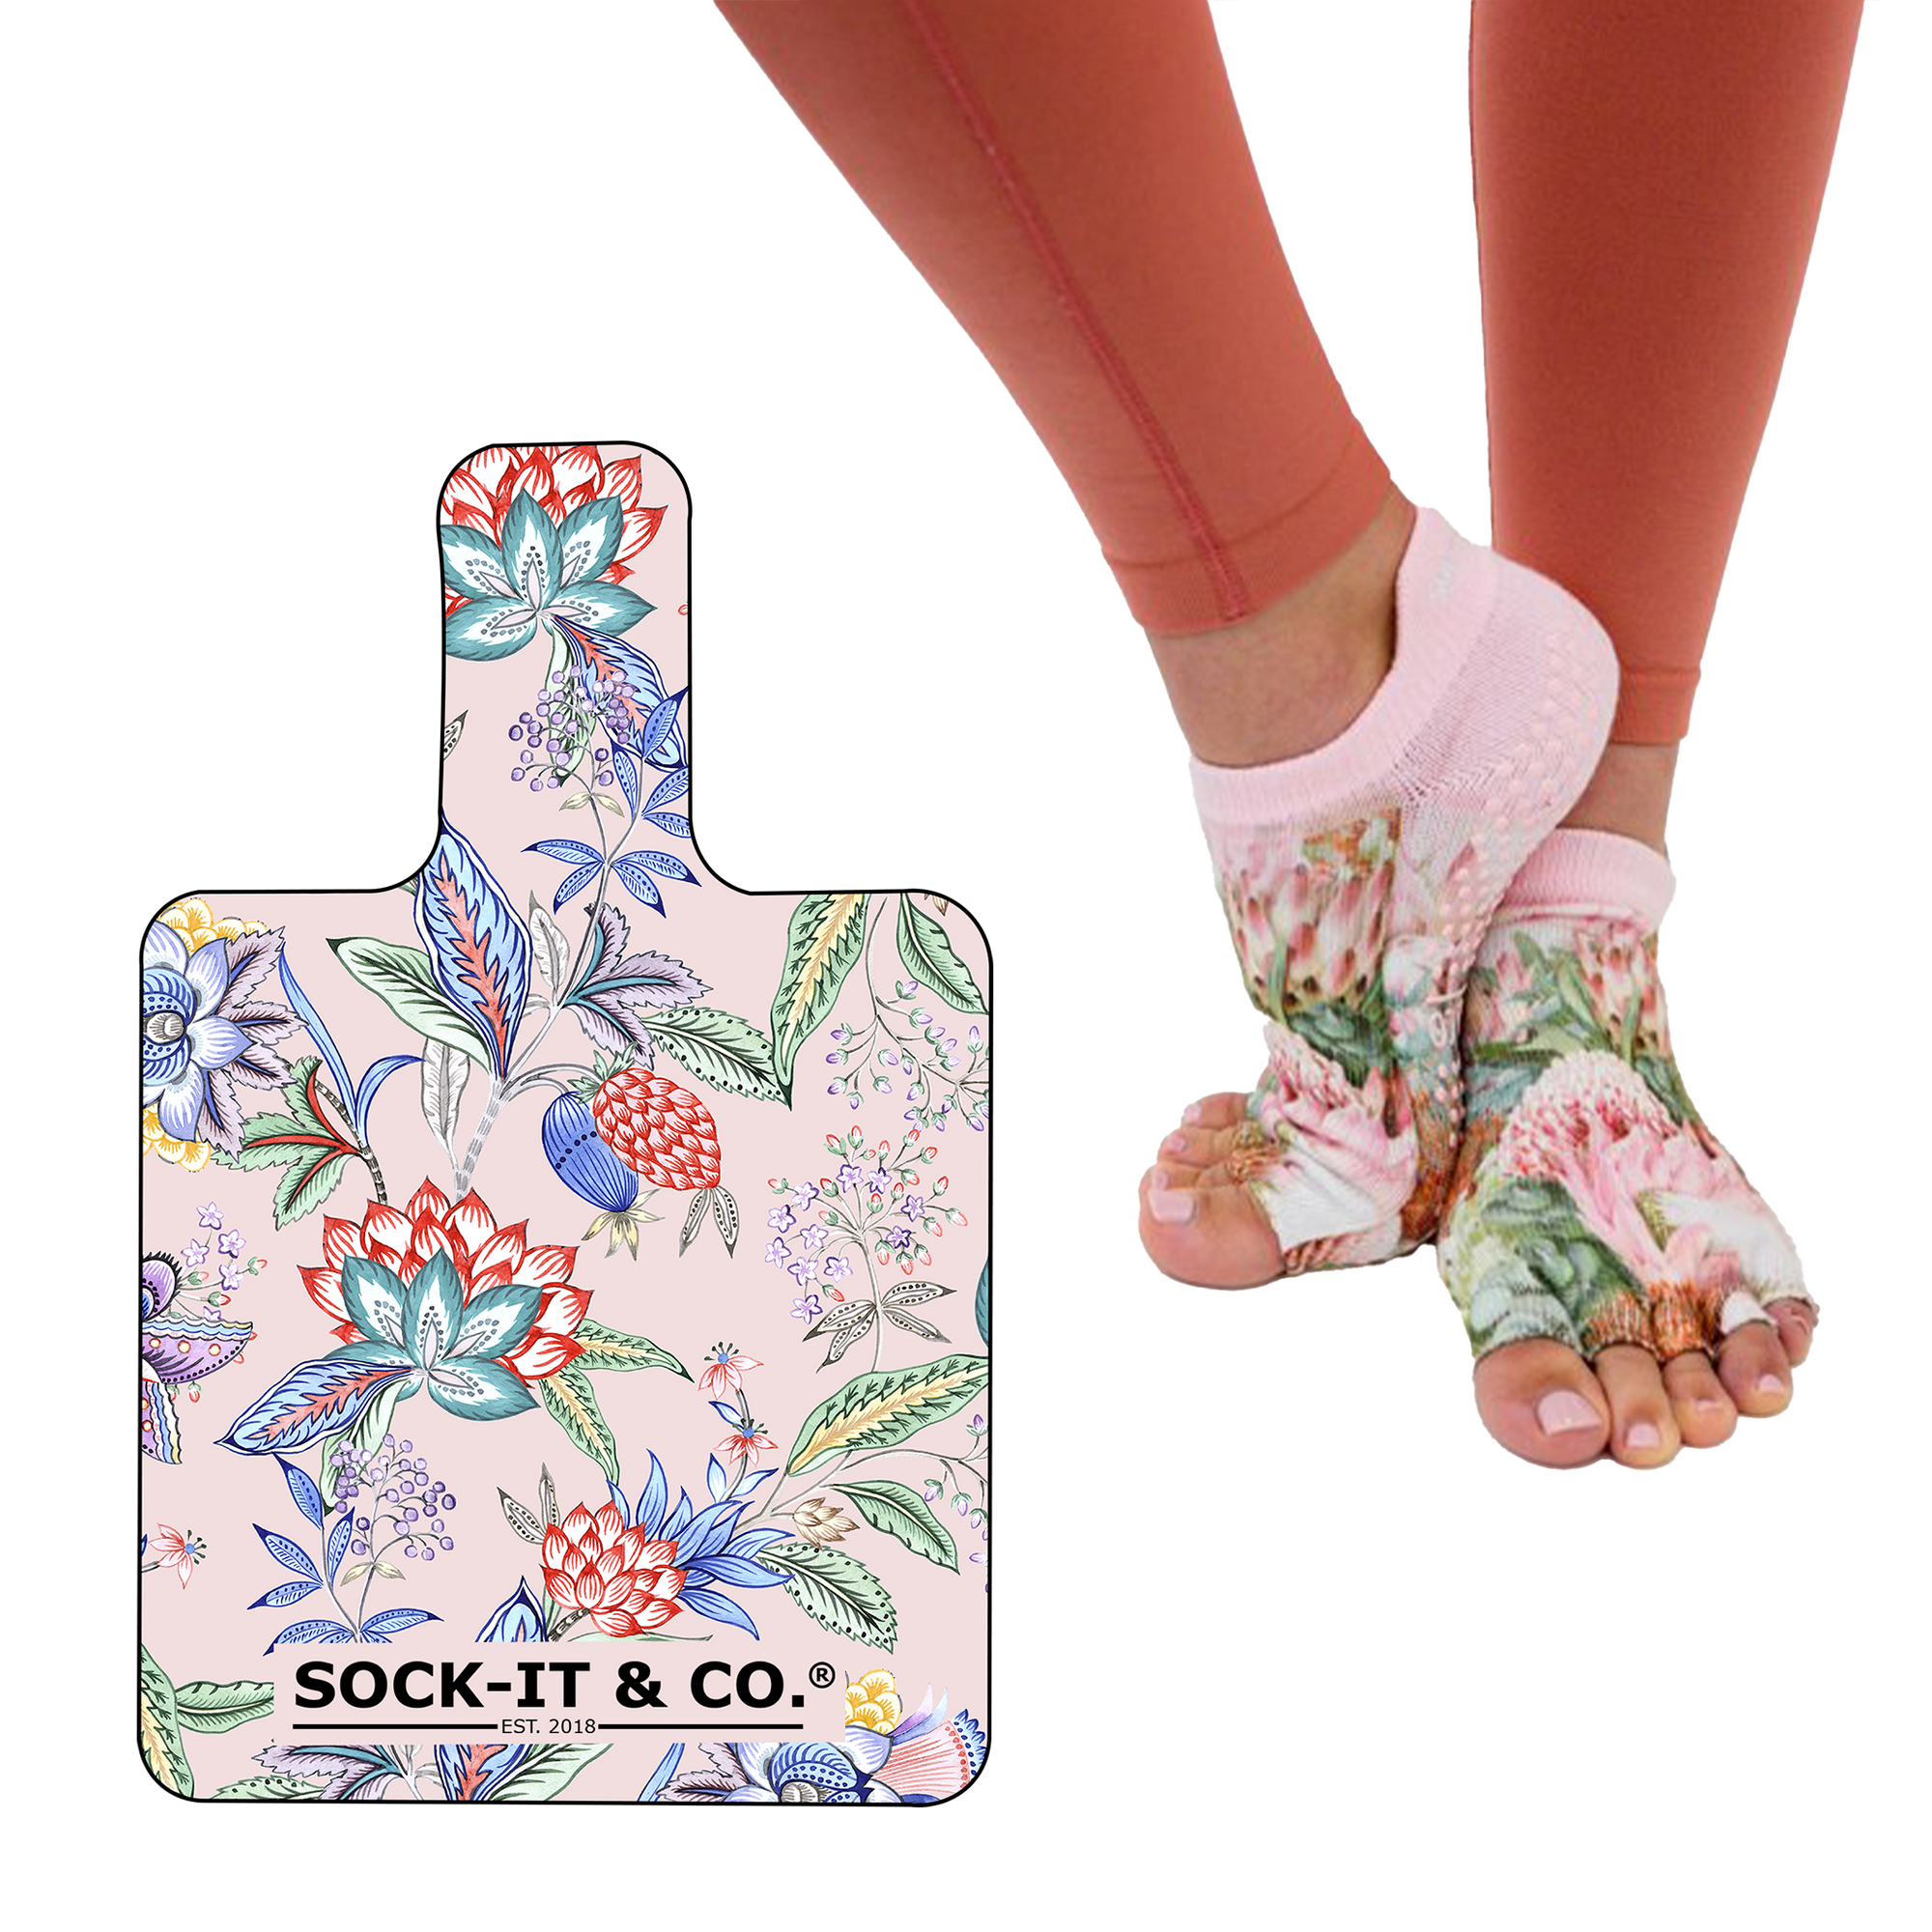  ABIRAM Yoga Socks Toeless Non-Slip Grips & Straps, for